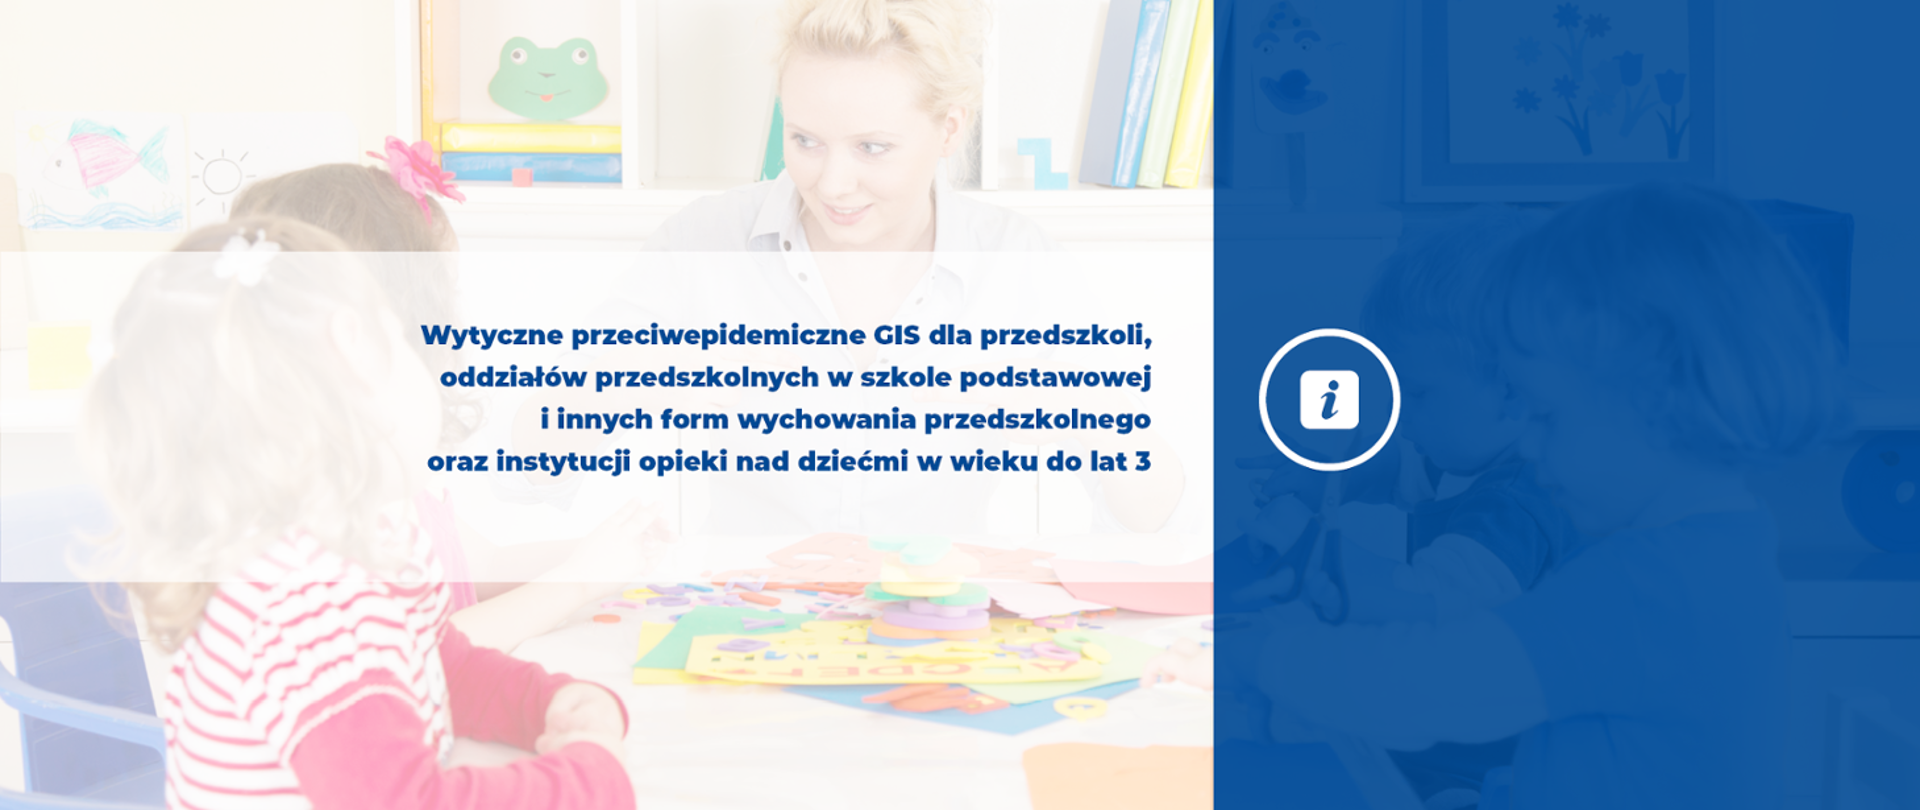 Wytyczne przeciwepidemiczne GIS dla przedszkoli, oddziałów przedszkolnych w szkole podstawowej i innych form wychowania przedszkolnego oraz instytucji opieki nad dziećmi w wieku do 3 lat.